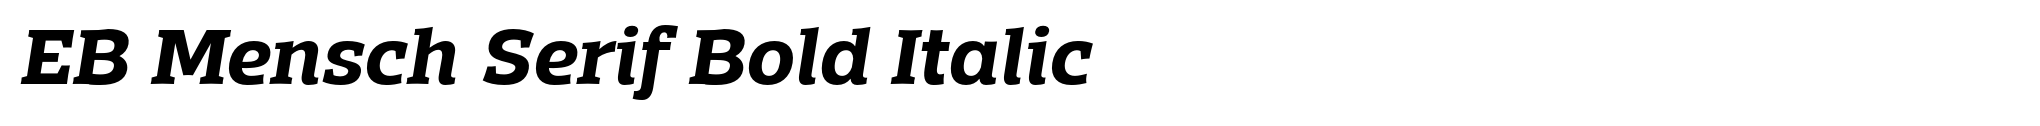 EB Mensch Serif Bold Italic image